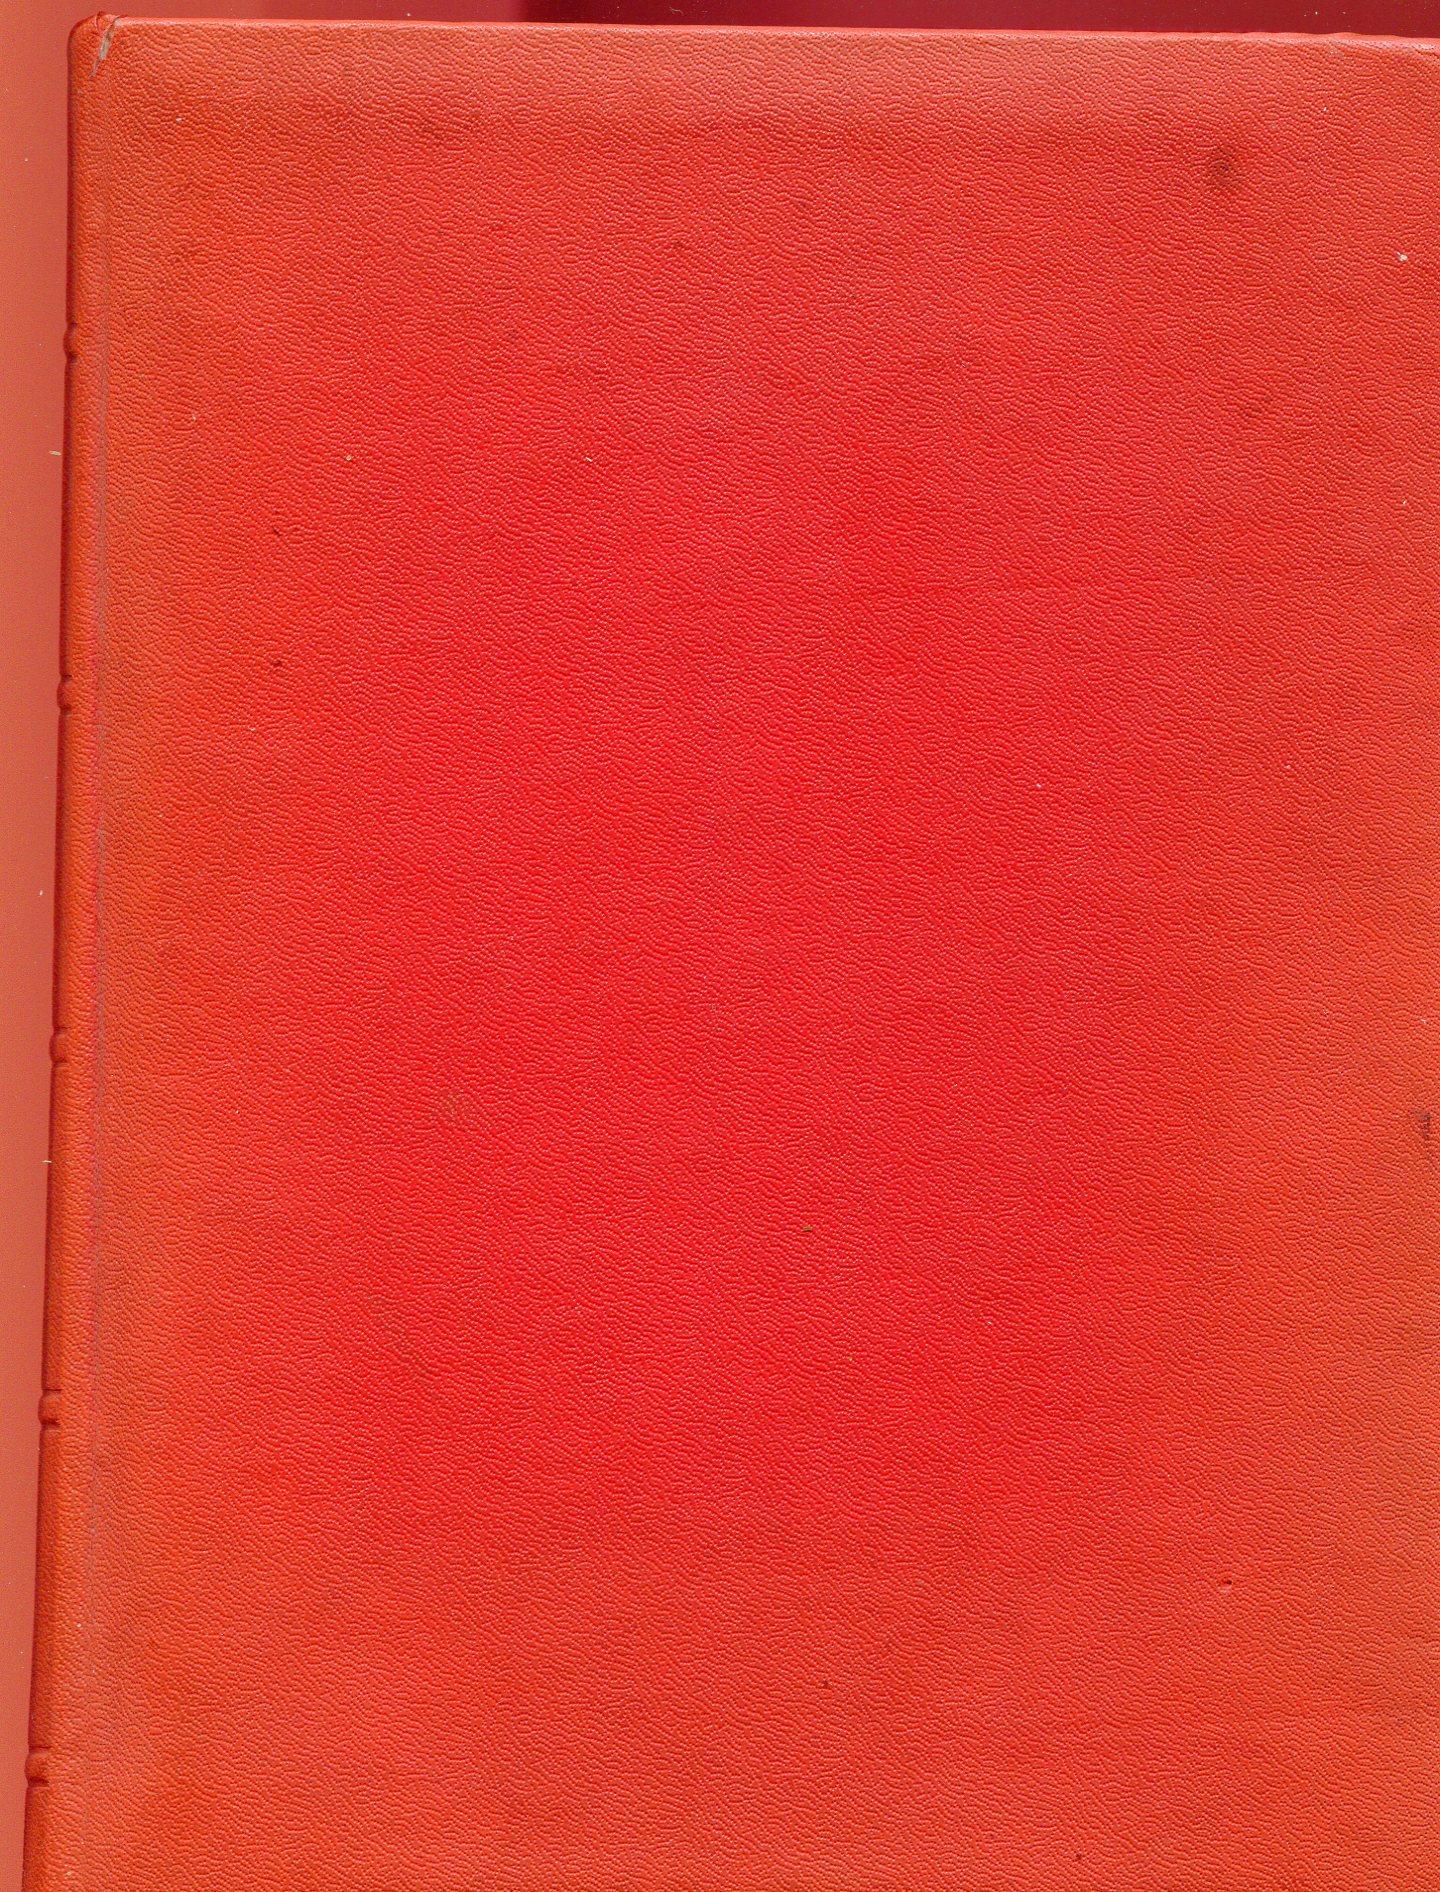 Het rode boek 1957 ev